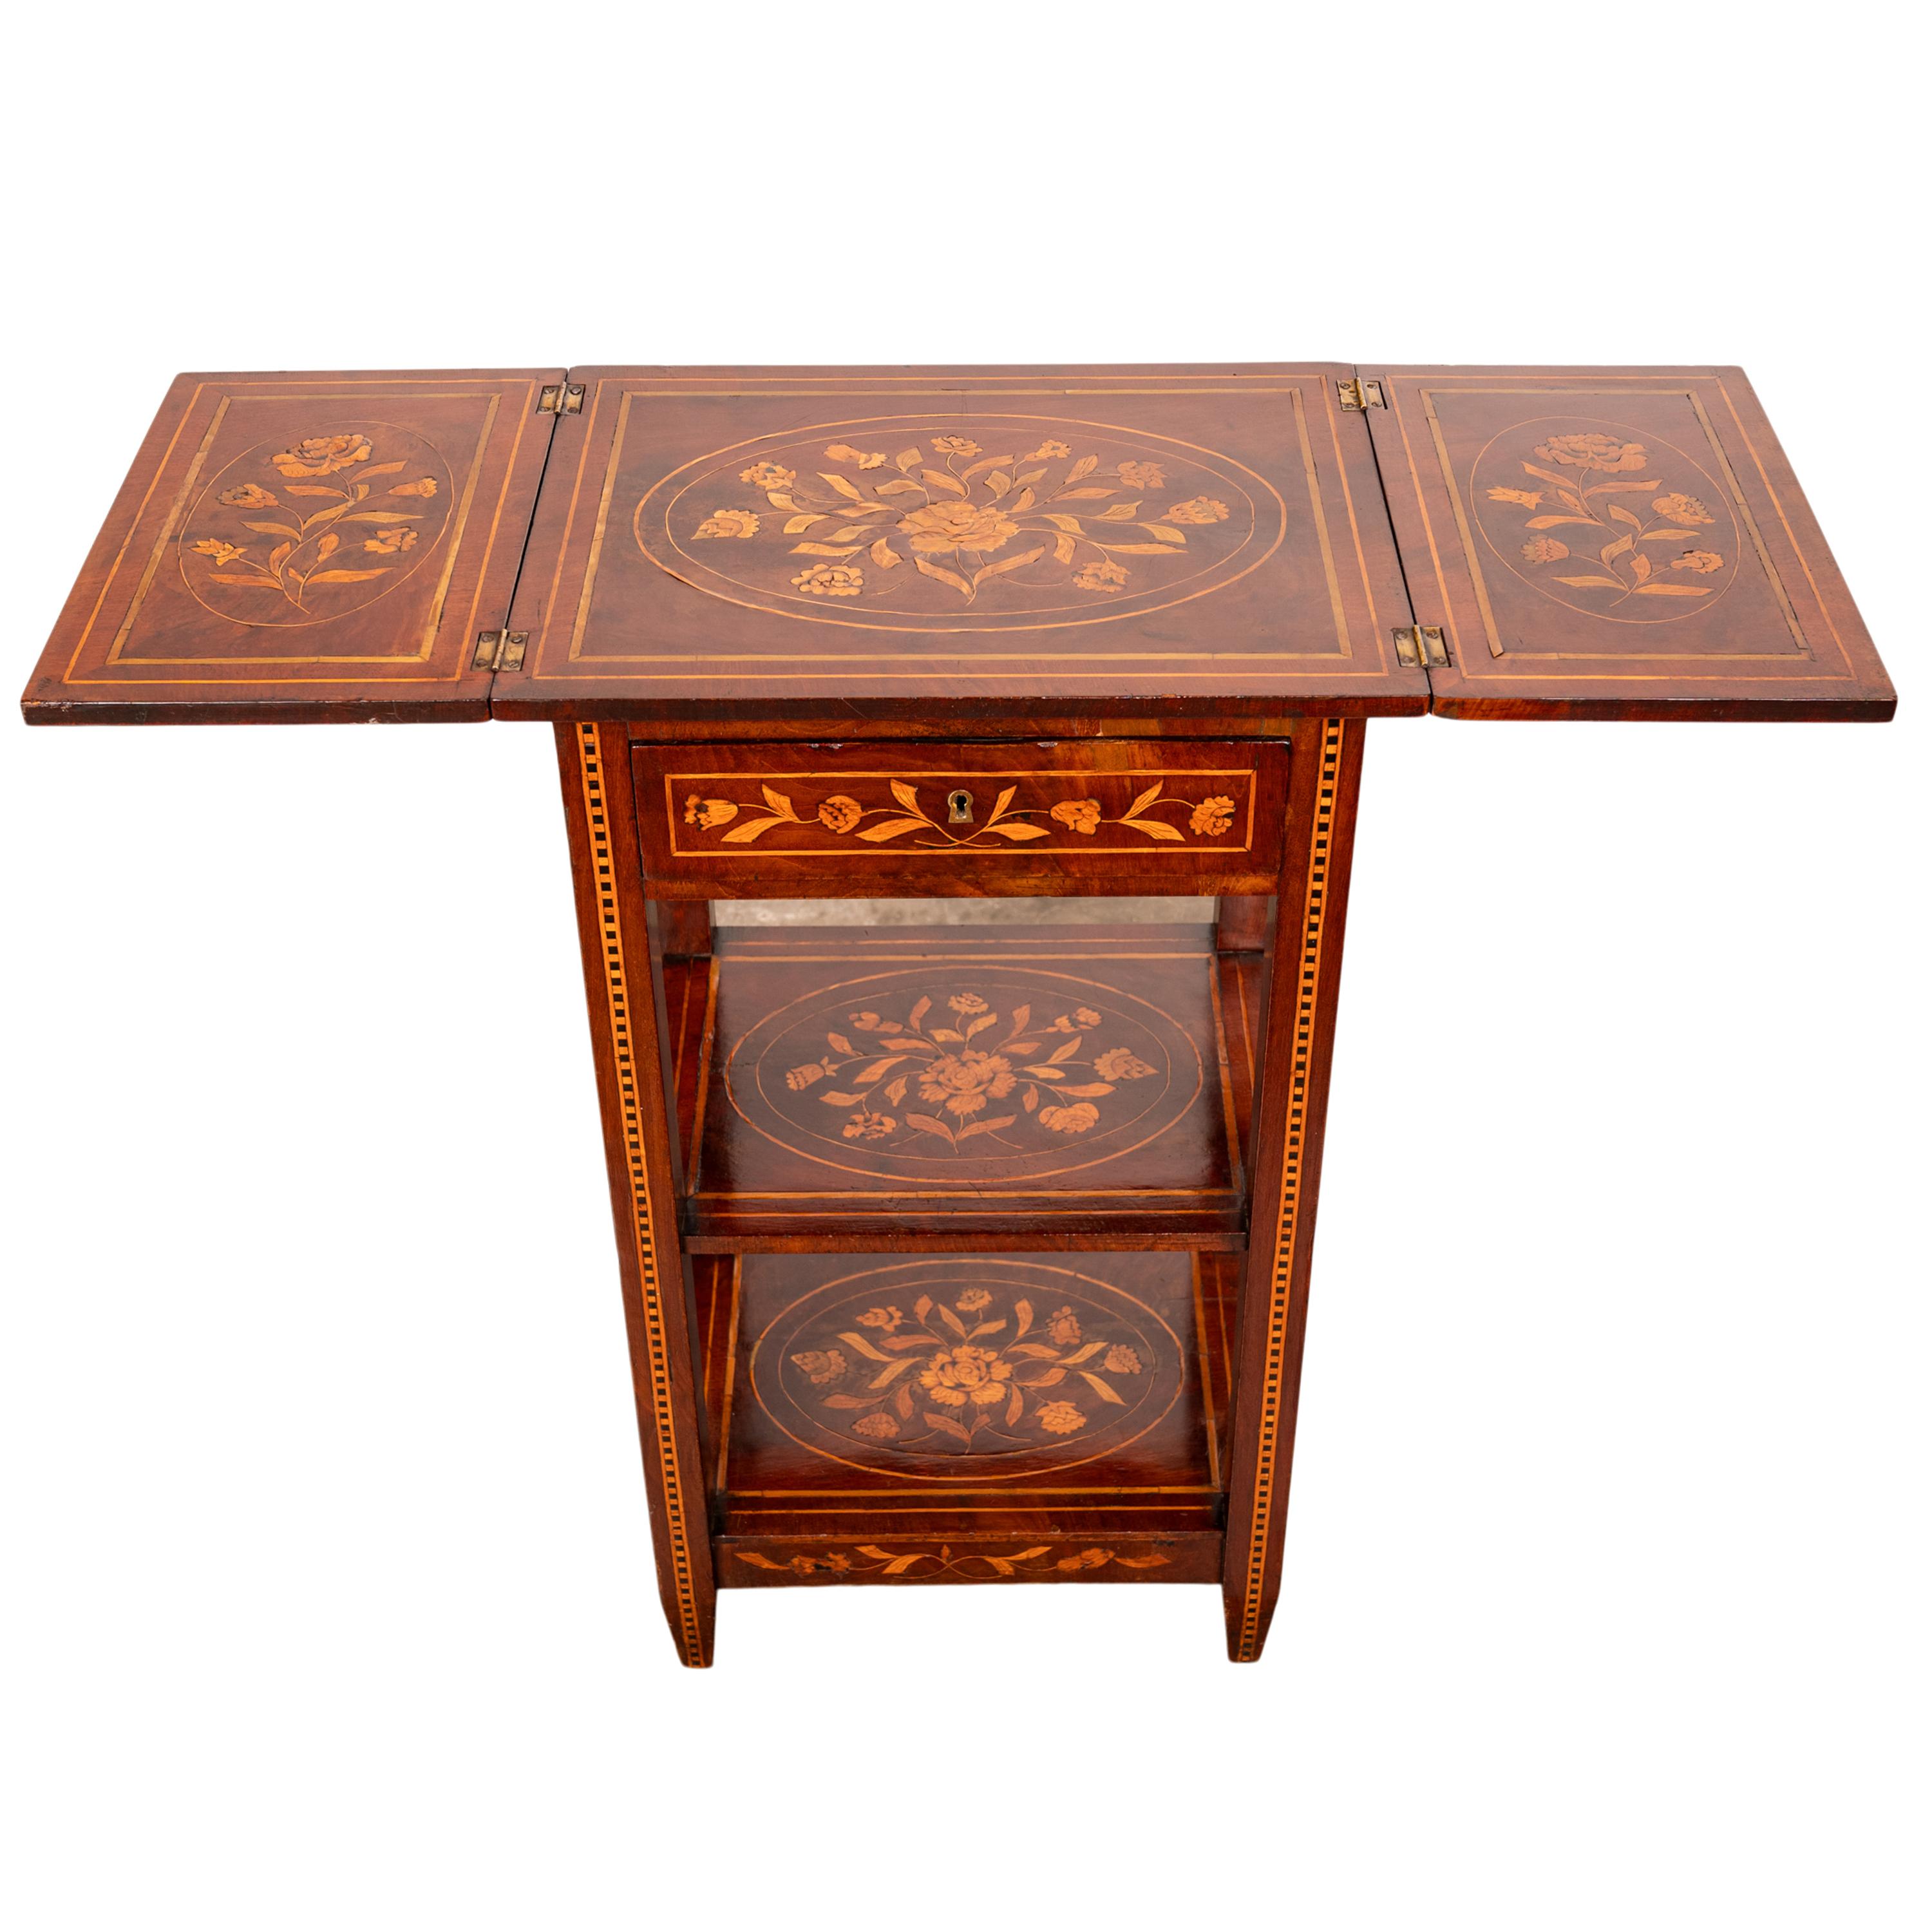 Table d'appoint en marqueterie hollandaise de bois de rose, vers 1820.
Cette table/étagère très élégante et rare a un plateau dépliable, les feuilles une fois fermées ont une somptueuse marqueterie incrustée de deux urnes fleuries avec des